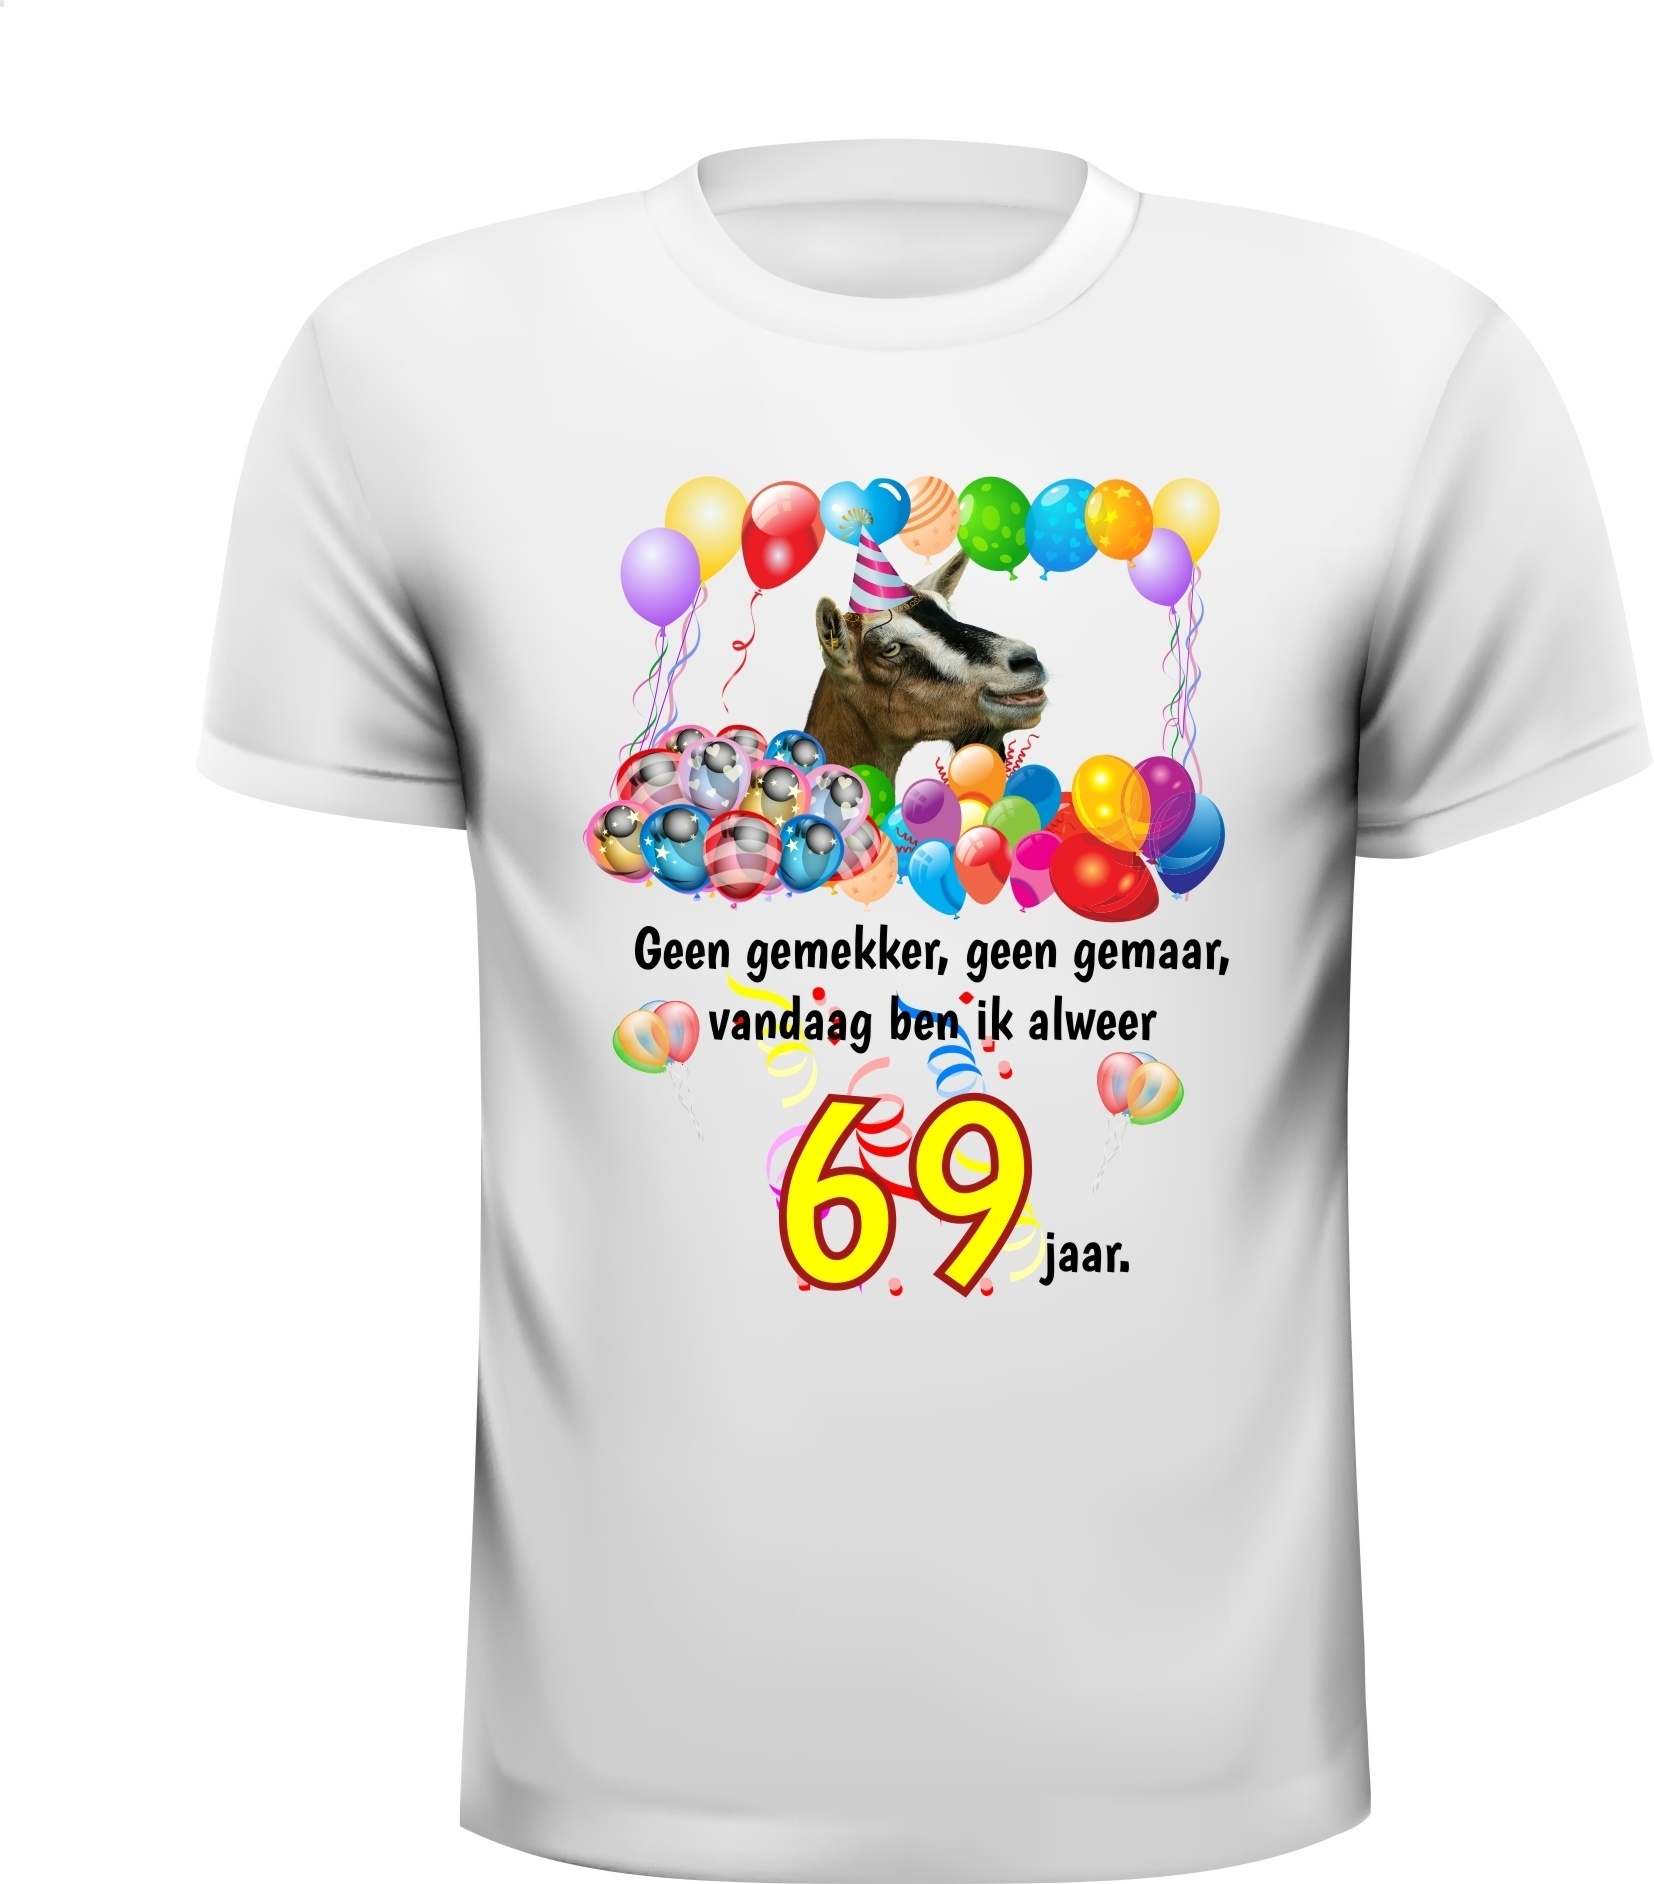 Mooi feestelijke verjaardag shirt voor een 69e verjaardag leuke print en grappige tekst